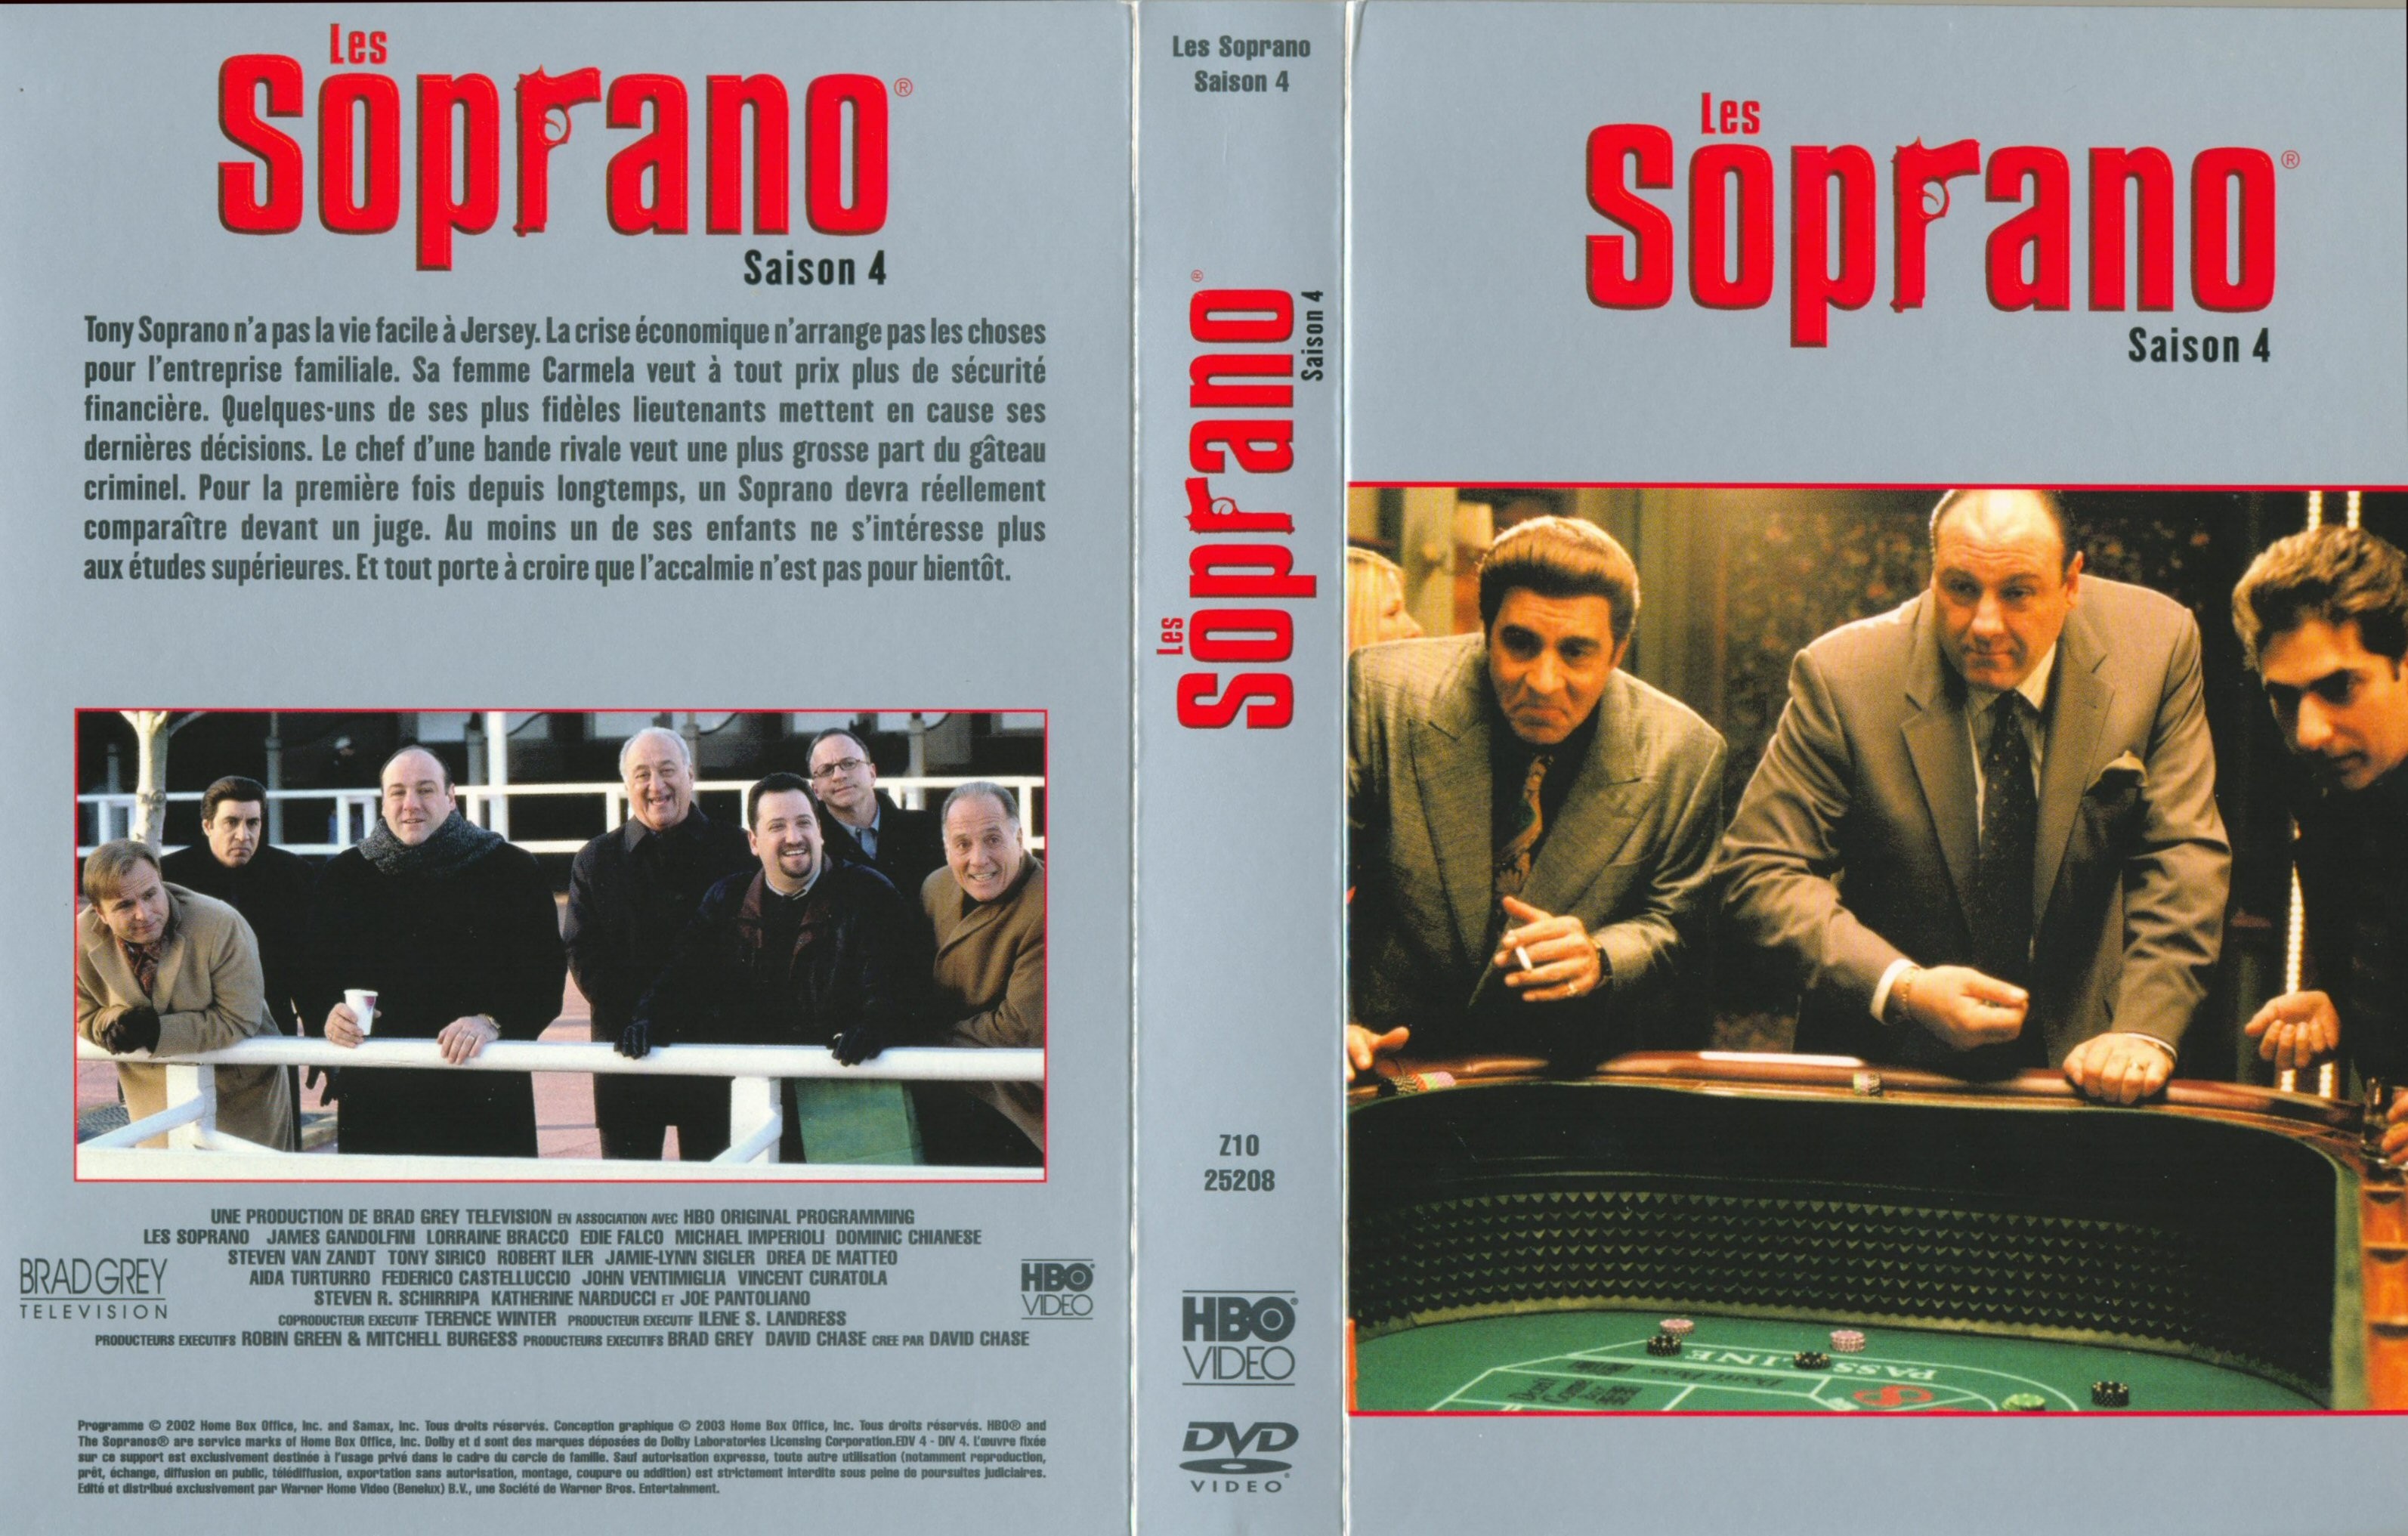 Jaquette DVD Les Soprano Saison 4 COFFRET